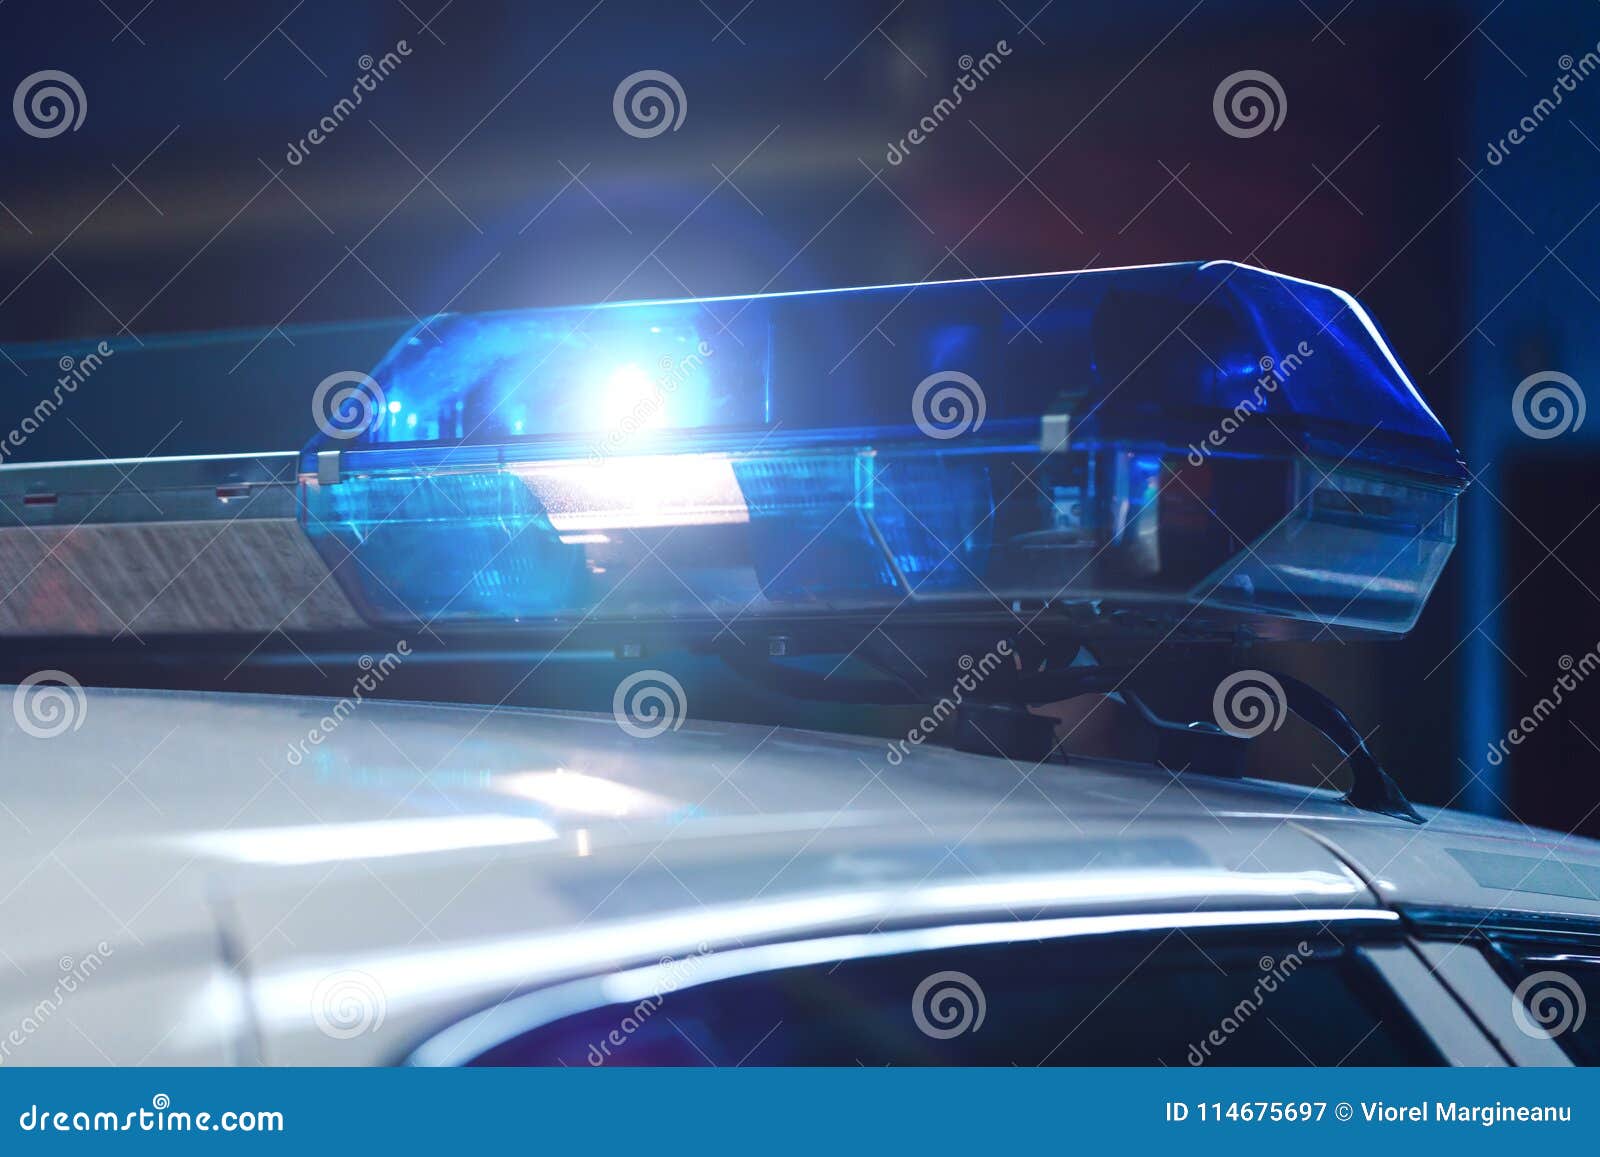 Polizei Nachts Im Auto Mit Blauem Sirenenblitzgeber Sirene Auf Pol  Stockbild - Bild von kanadisch, leben: 114675697